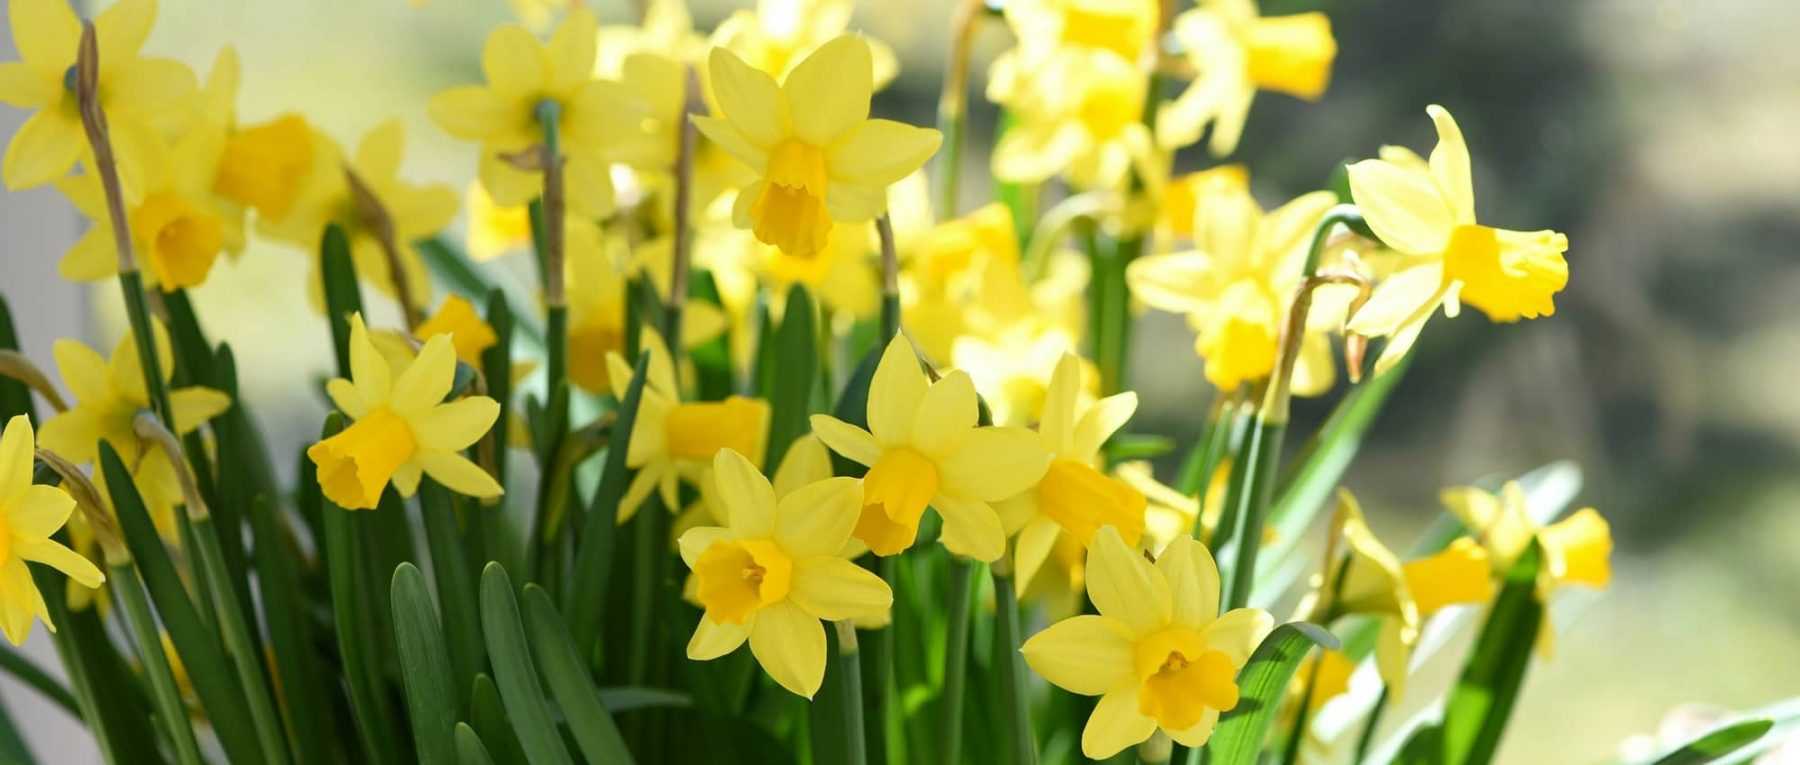 Les Narcisses ou jonquilles : Planter, Cultiver et Entretenir